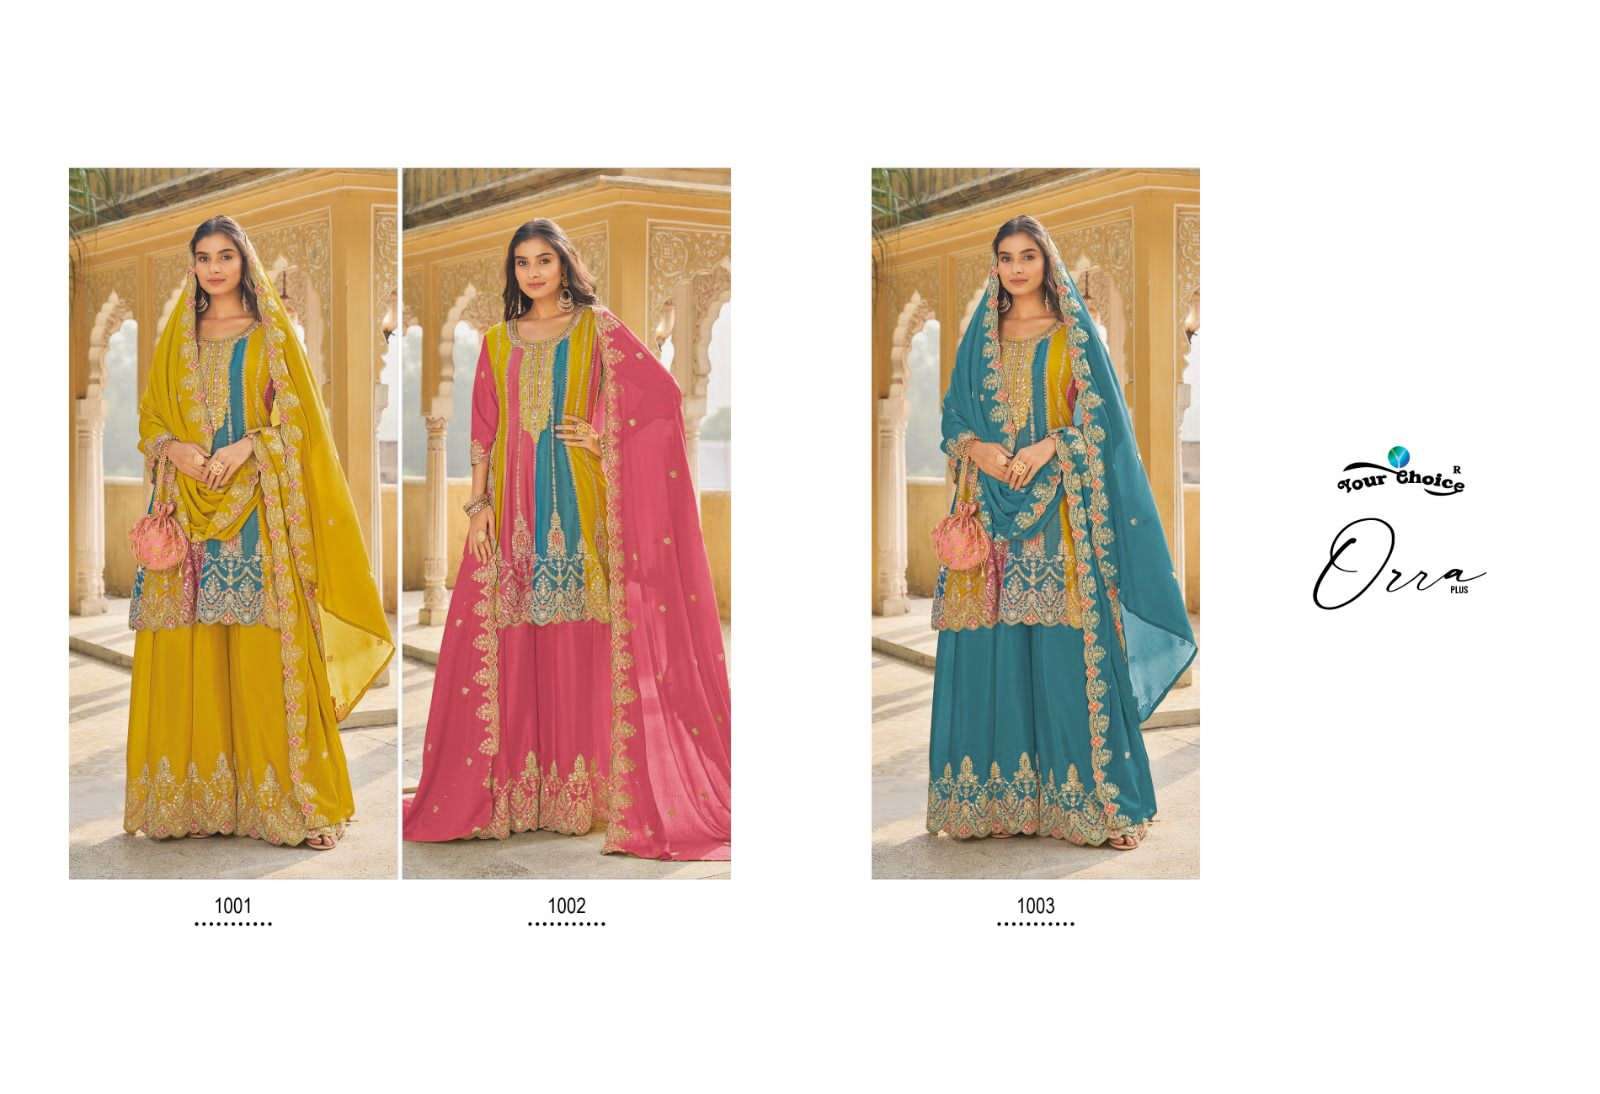 your choice orra plus 1001-1003 series latest readymade pakistani salwar kameez at wholesaler rate gujarat surat